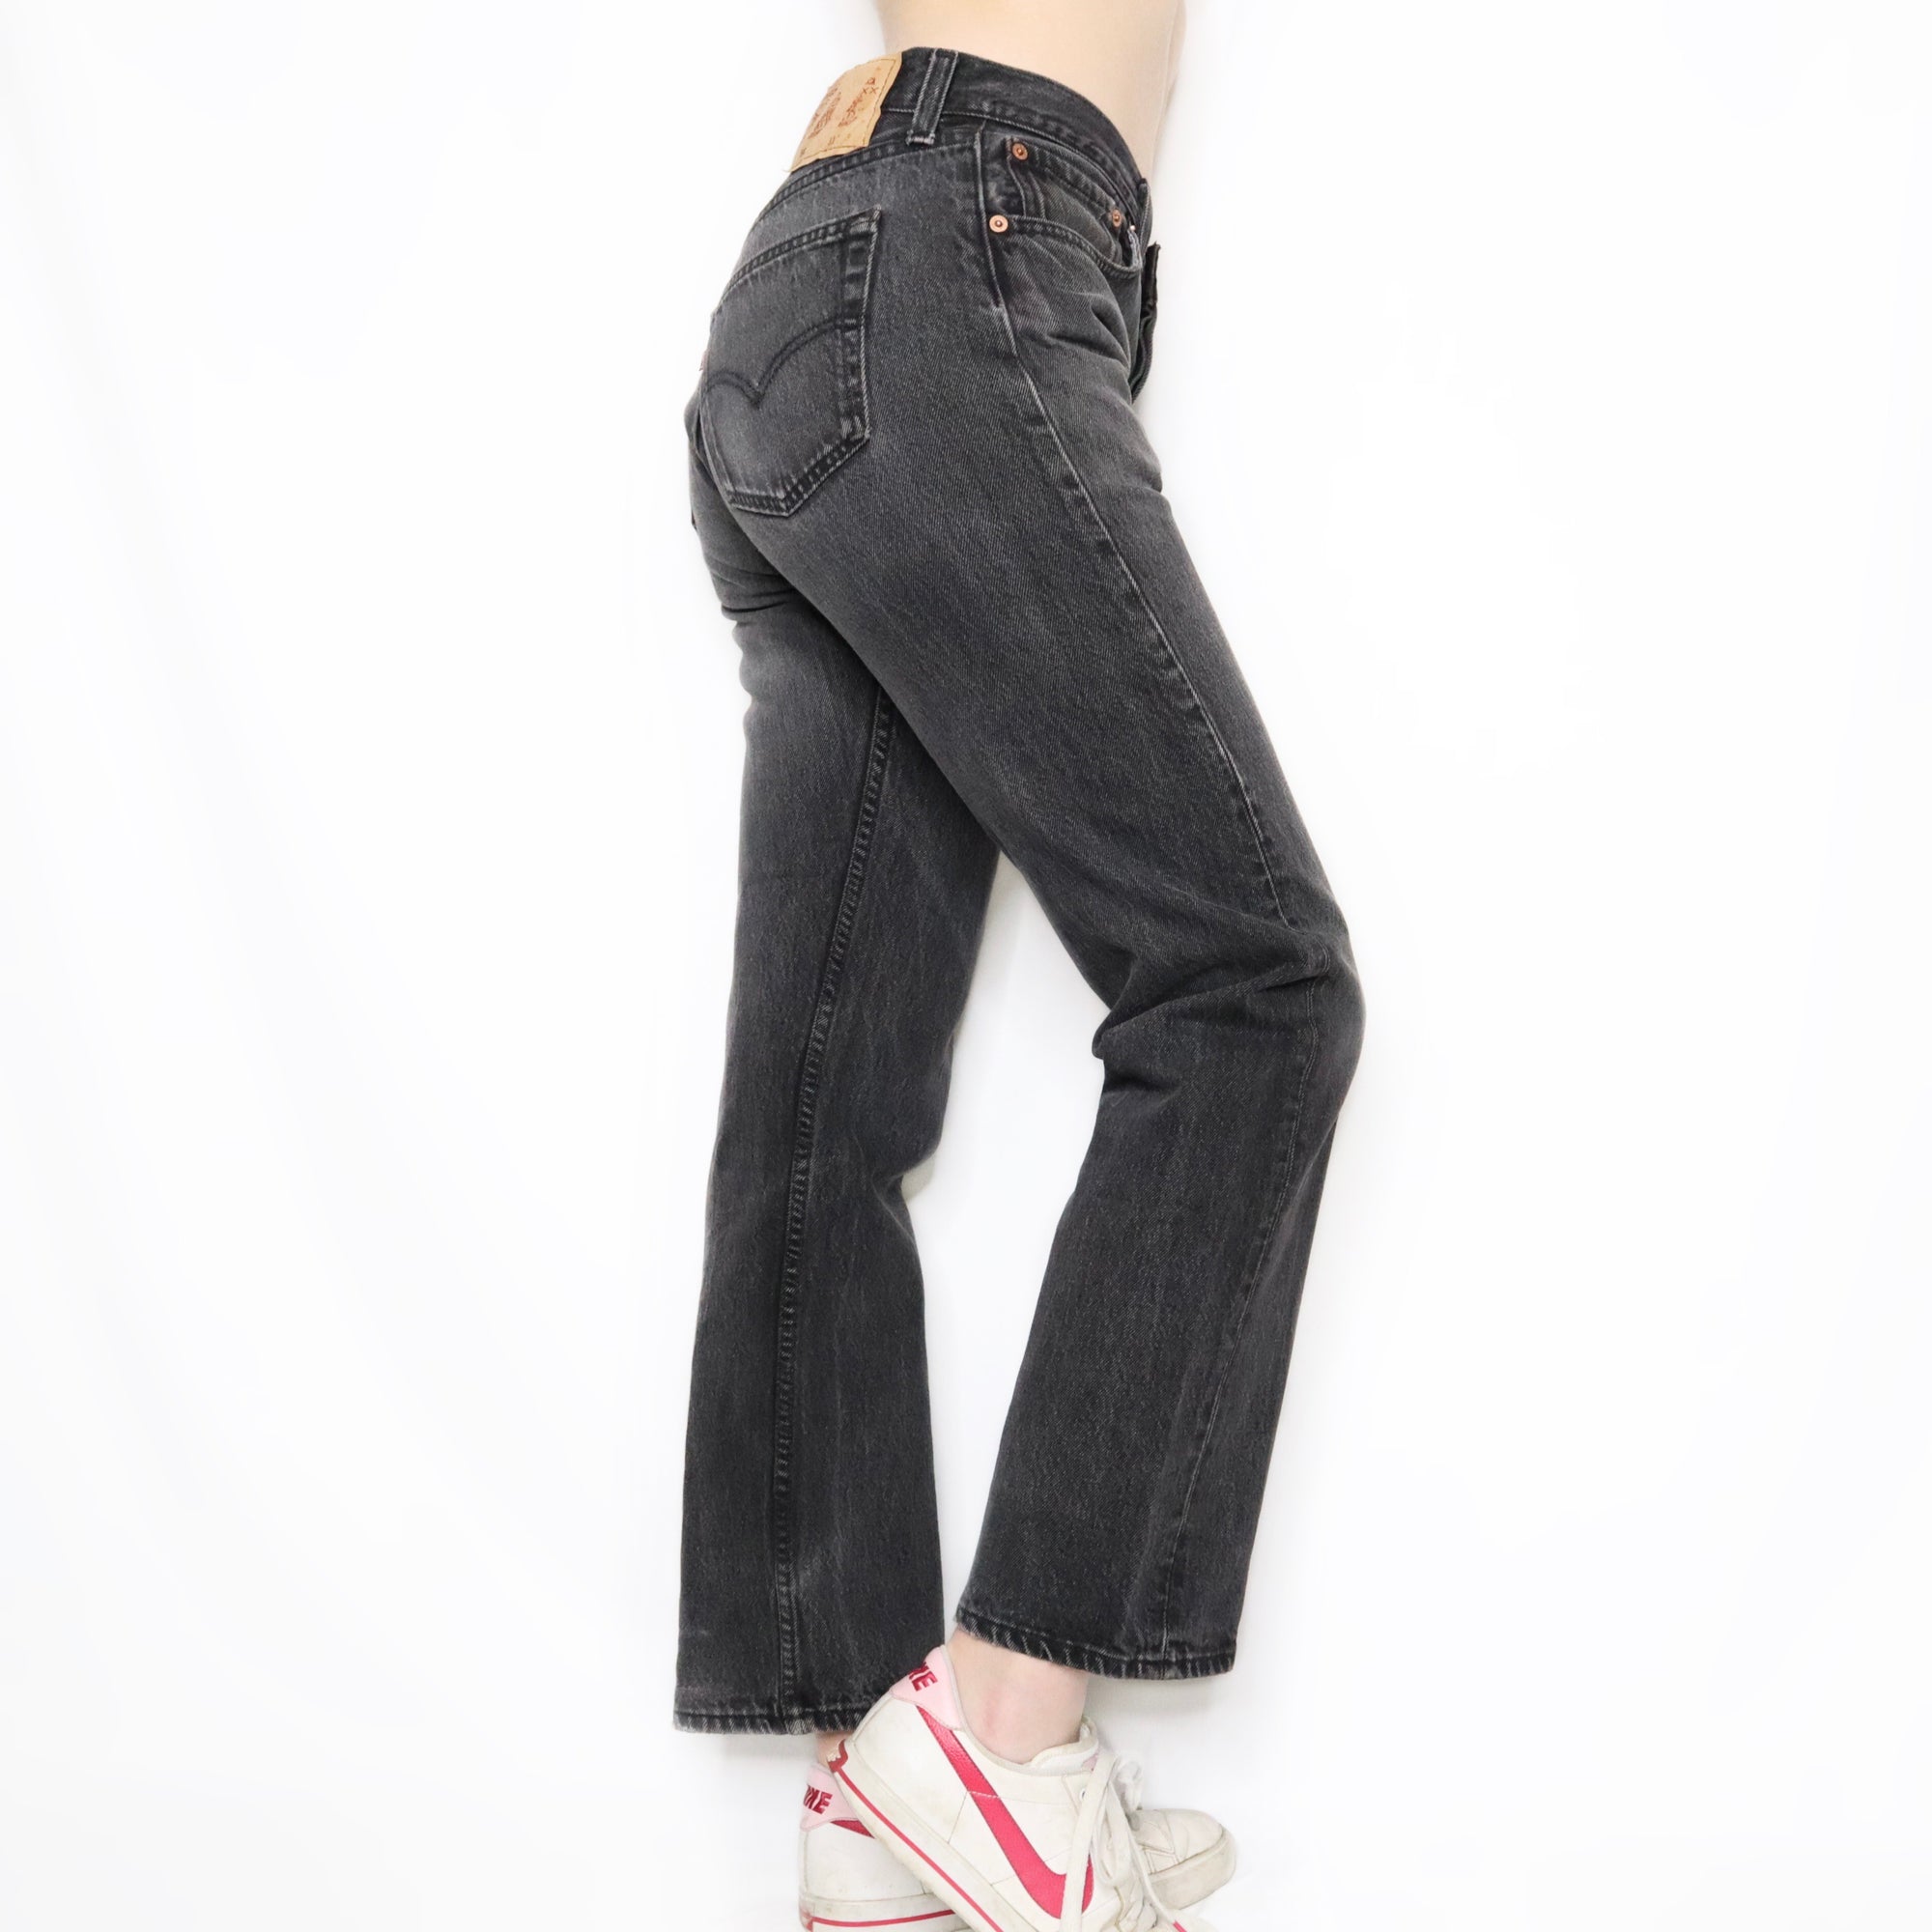 Vintage 90s Black Mid Rise 501 Levis Jeans